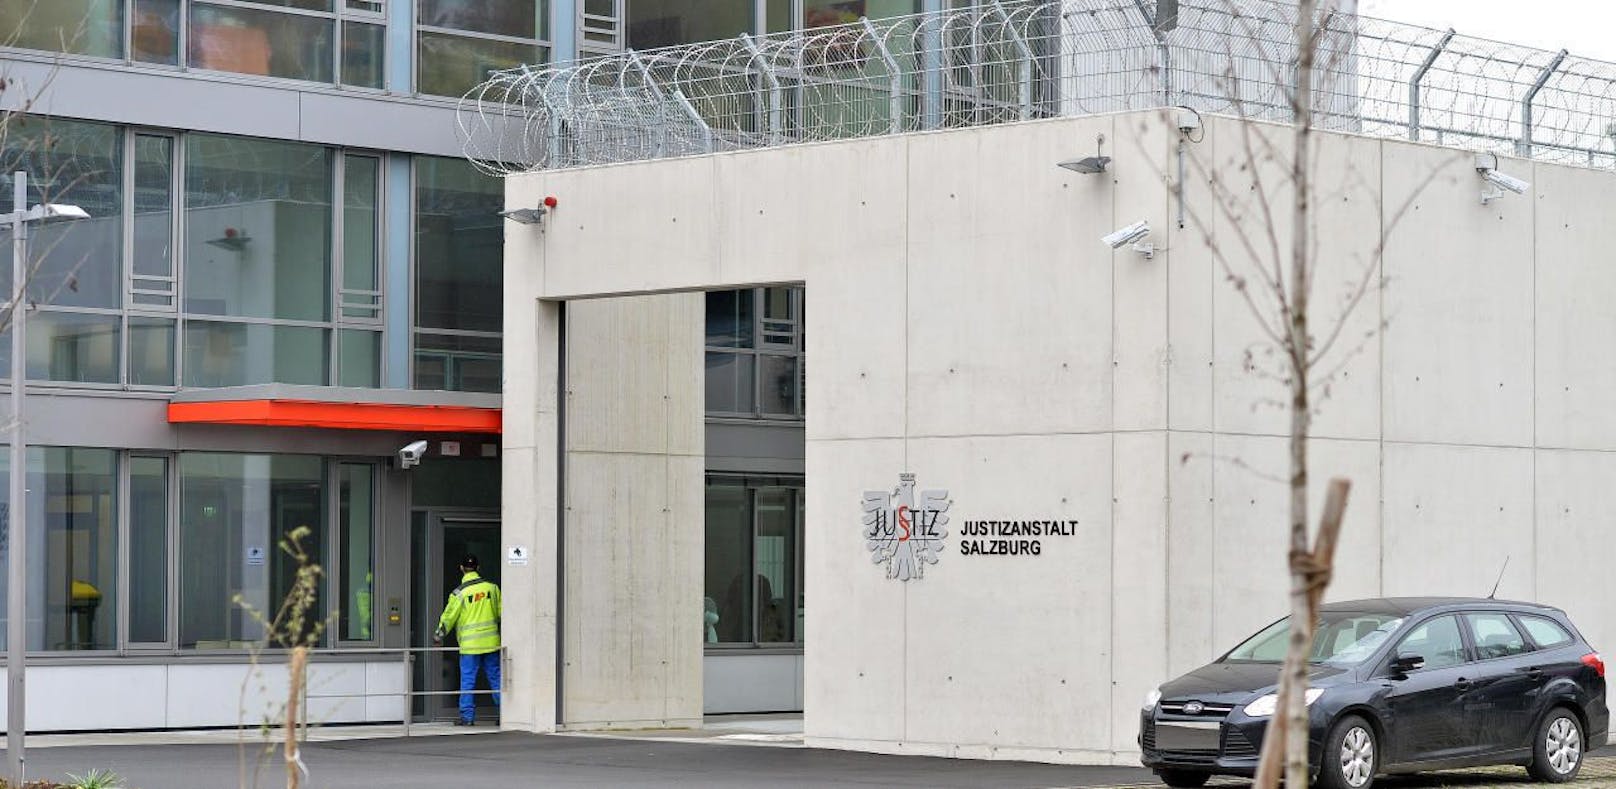 Die Teenager sitzen in der Justizanstalt Salzburg in Untersuchungshaft